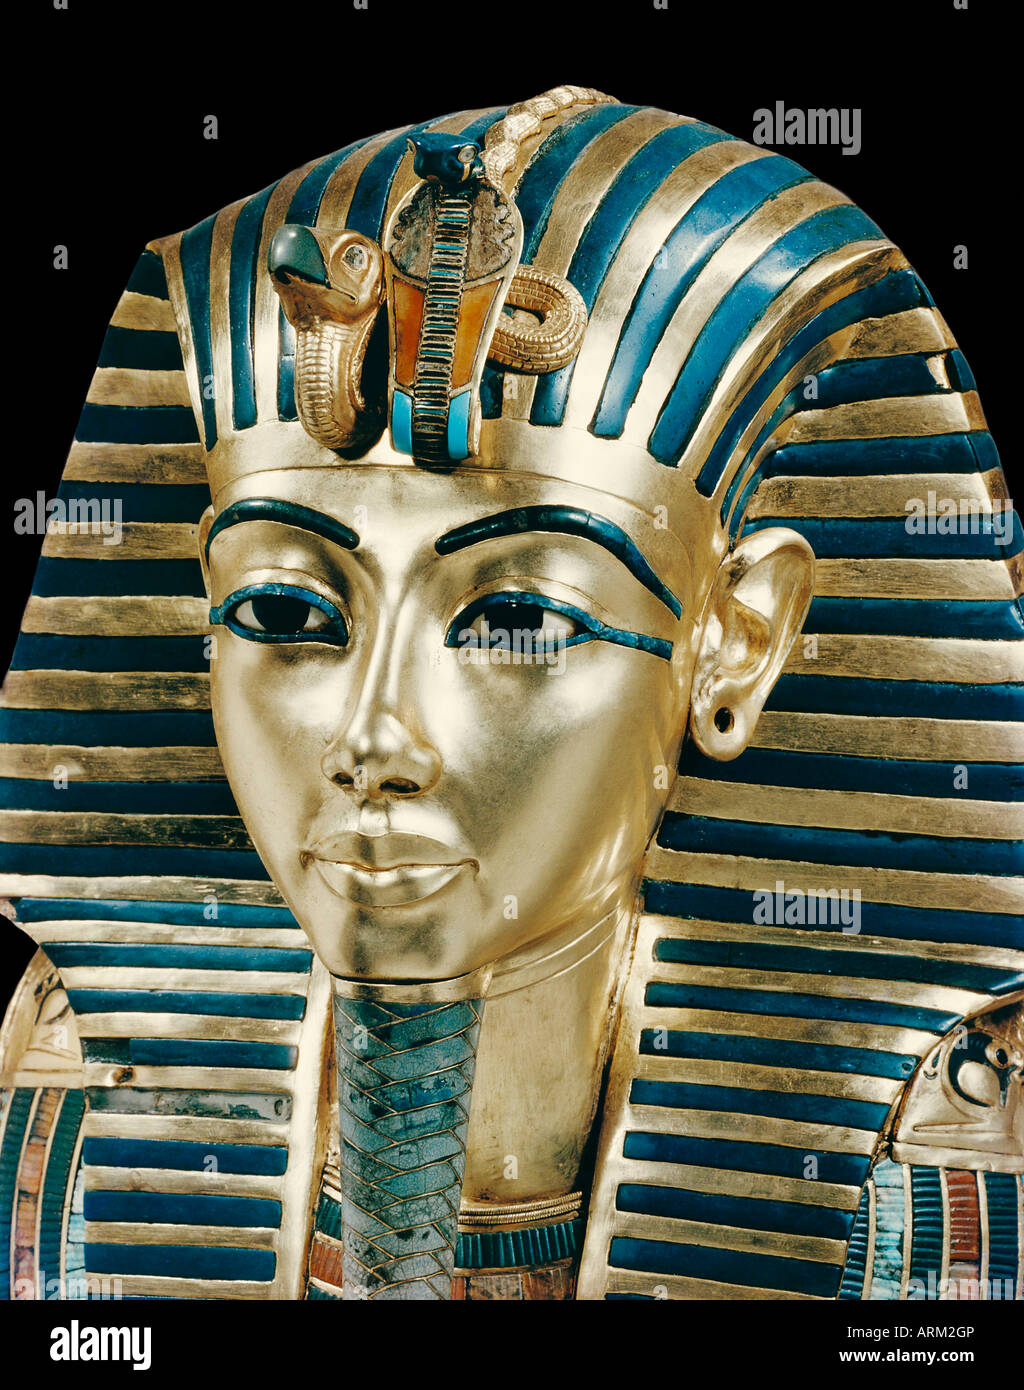 Tutankhamon la maschera funeraria in oro massiccio intarsiato con pietre  preziose e semipreziose, dalla tomba del faraone Tutankhamon Foto stock -  Alamy